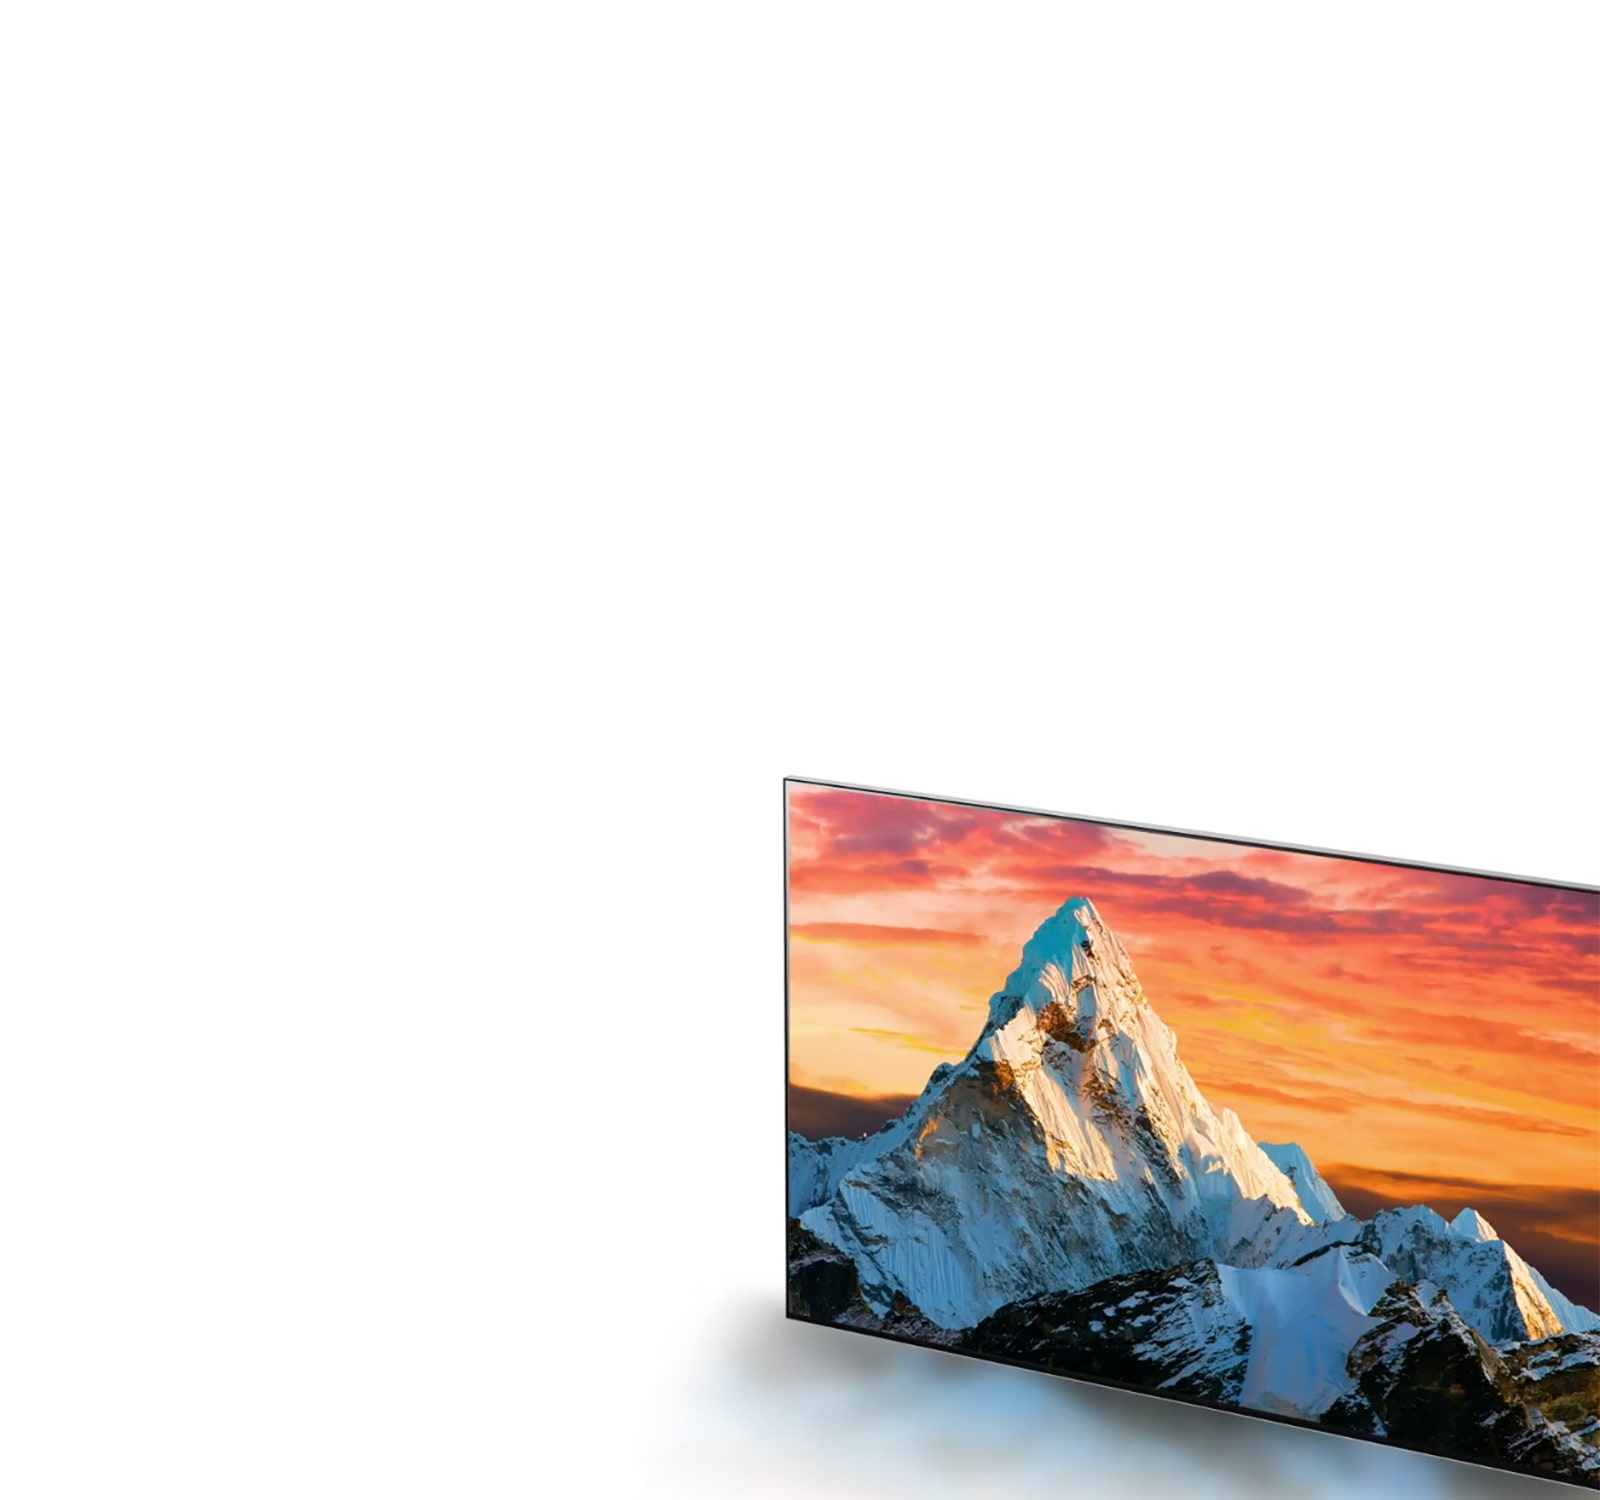 Lo schermo del televisore con la montagna contro il tramonto arancione si ingrandisce e contemporaneamente aumenta la nitidezza dei dettagli (riproduci video).